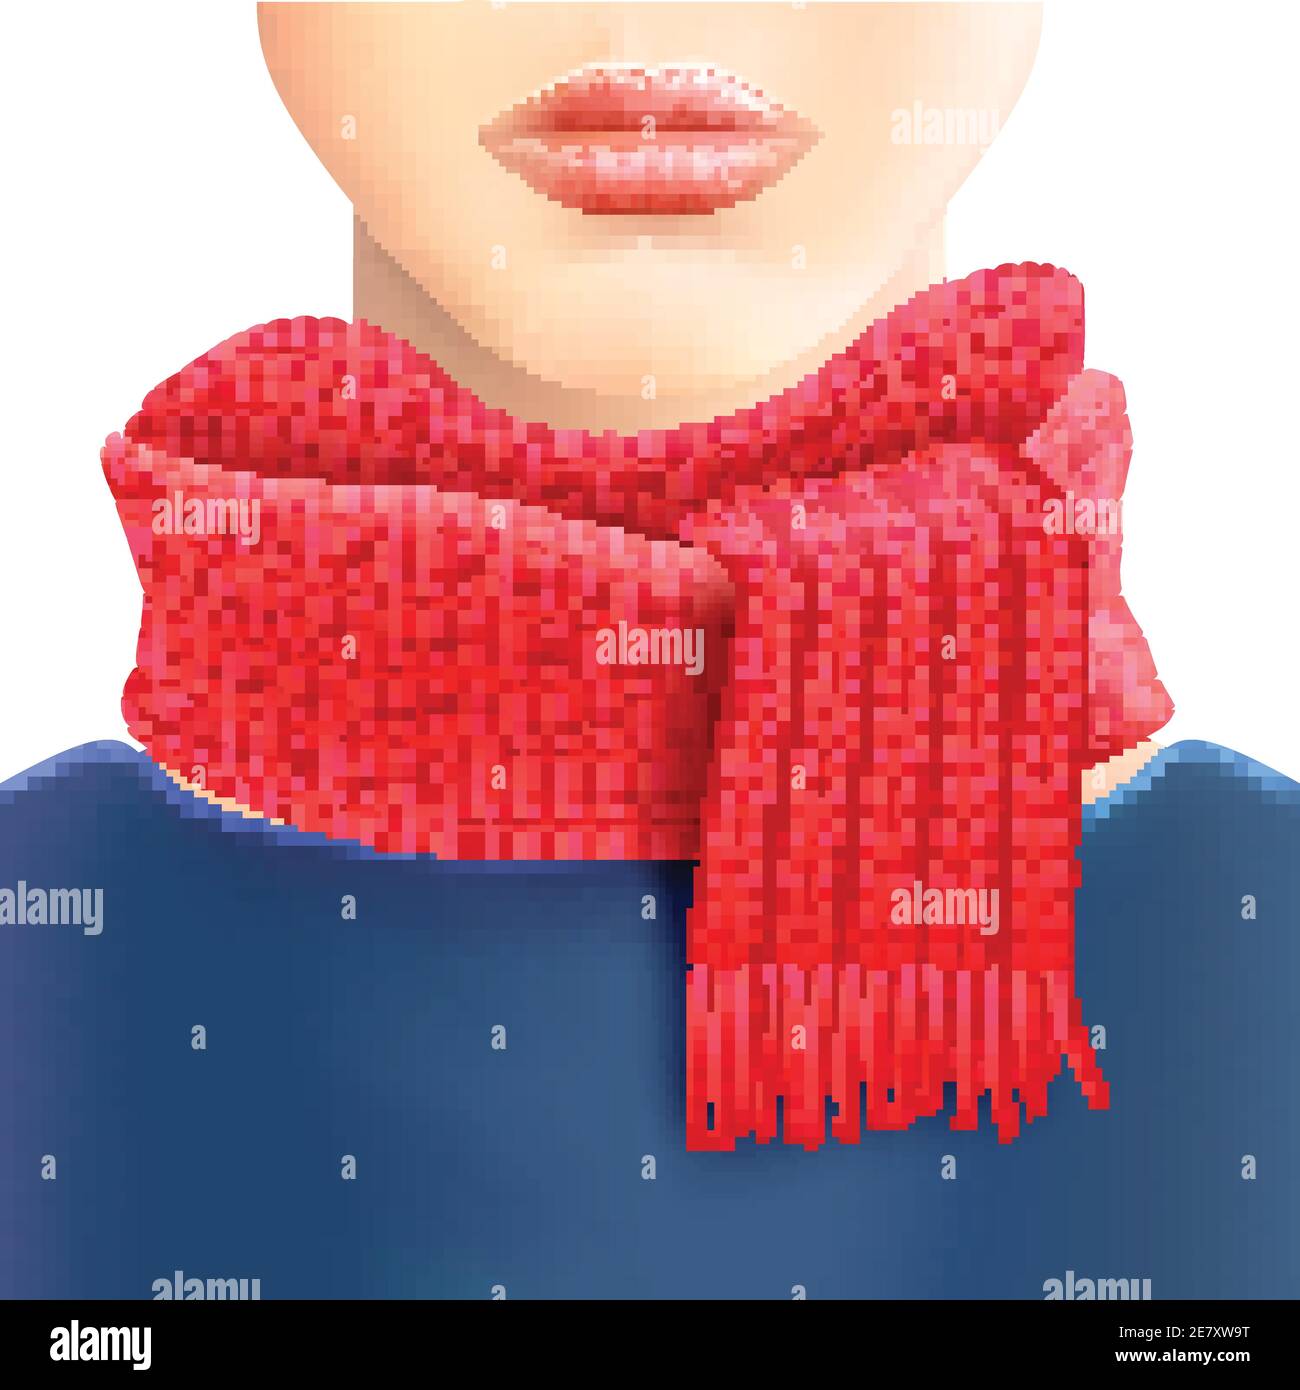 Frau modisch gestrickt roten Schal für Schaufenster und Freizeitkleidung Winter Accessoires Kataloge Vektor Illustration Stock Vektor